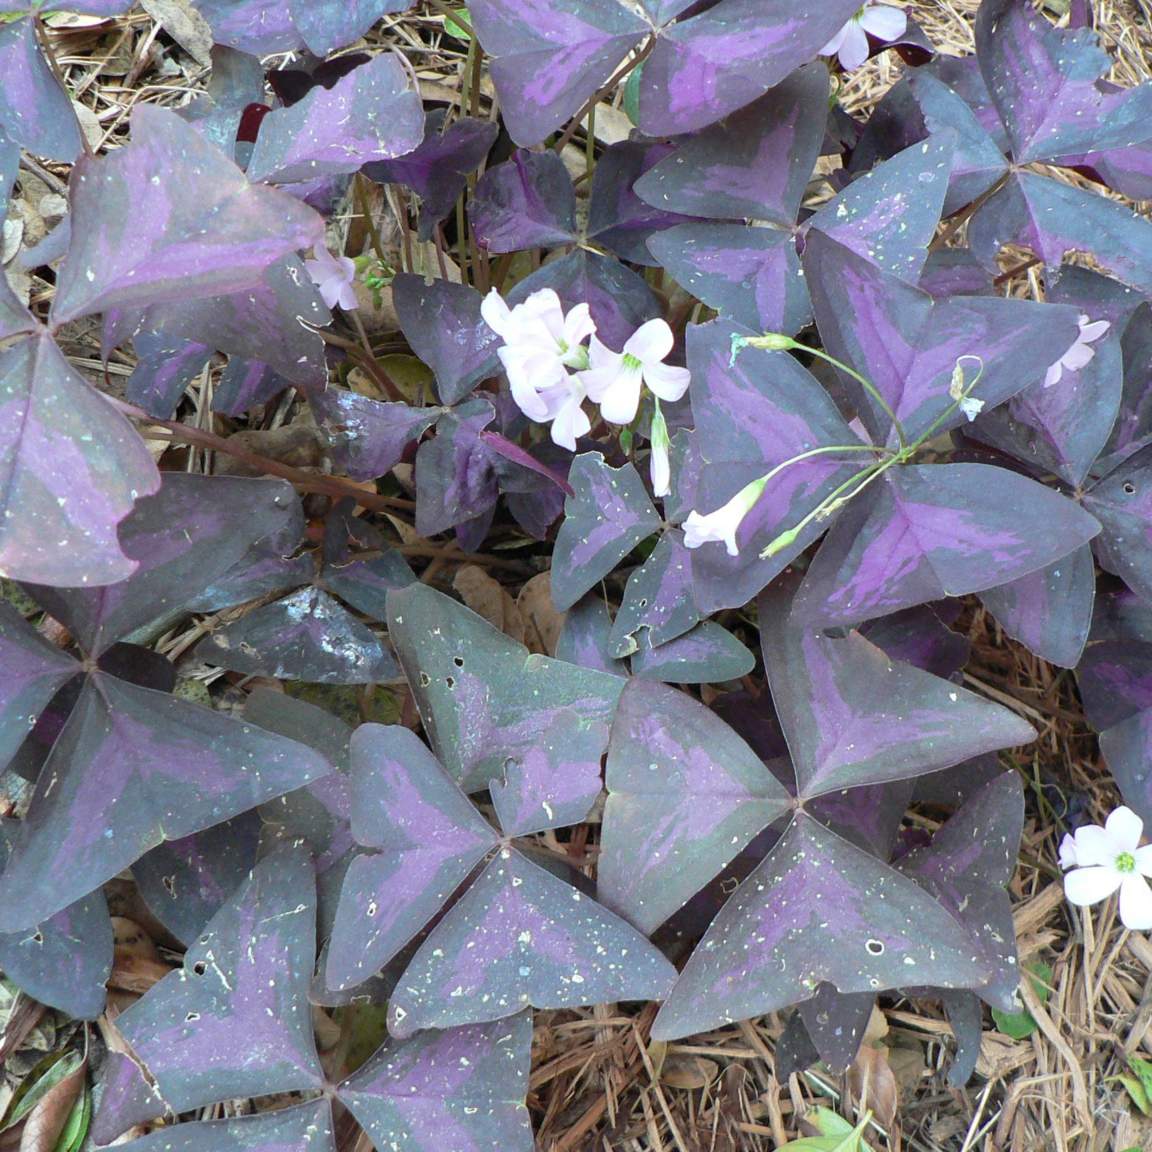 Oxalis triangularis subsp. Papilionaceae 'Autopurea';  False Shamrock 'Atropurpurea'; Pergola Garden